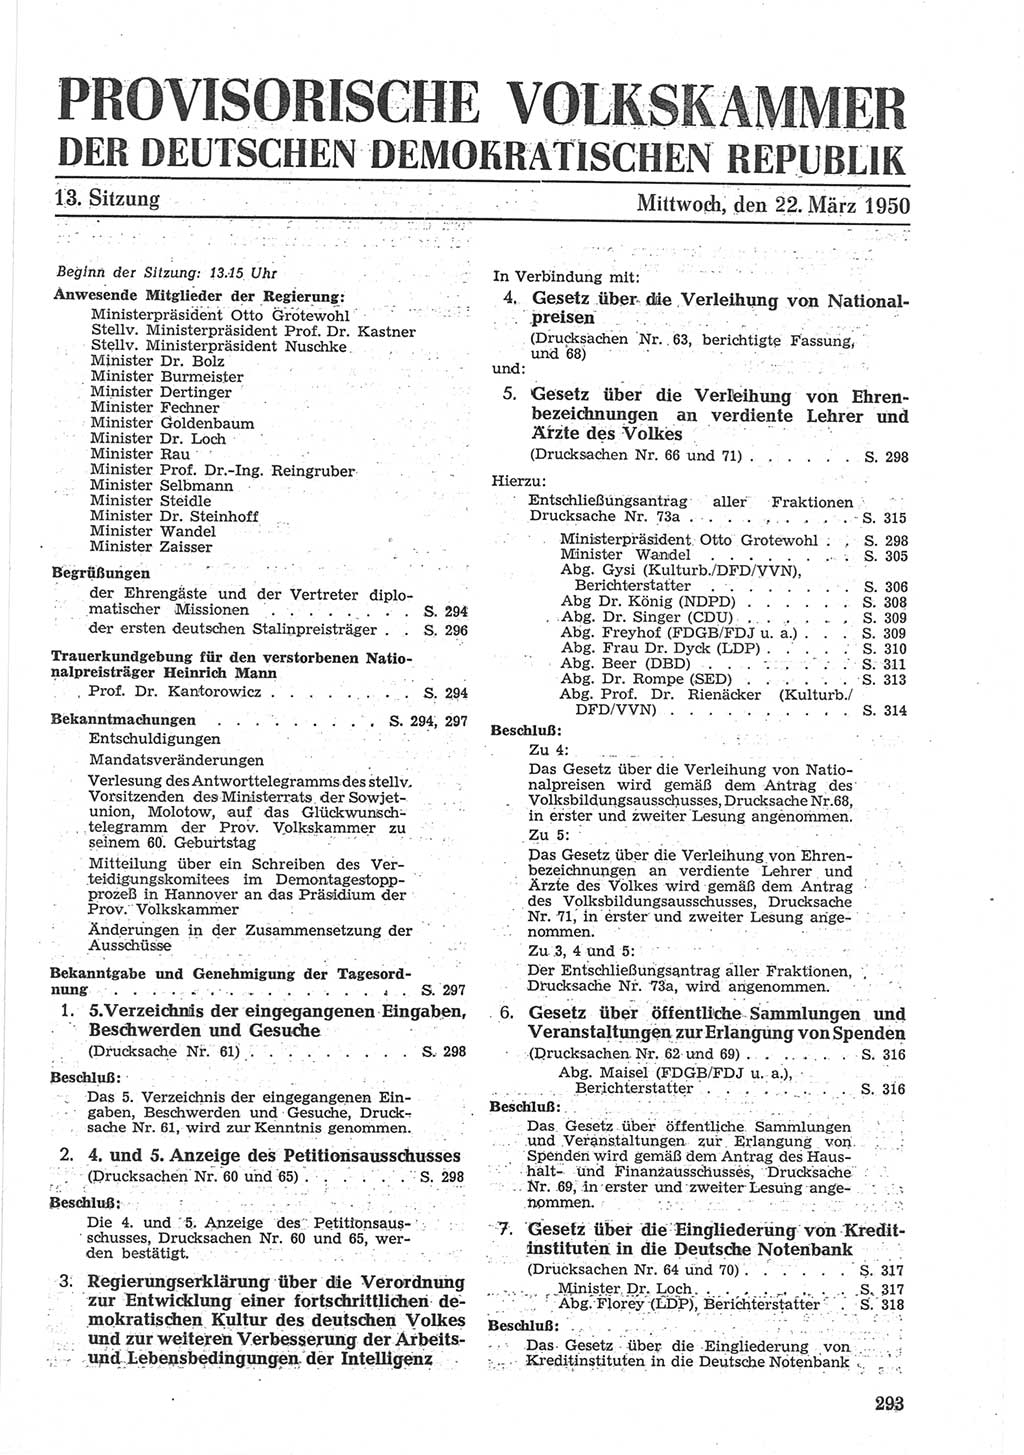 Provisorische Volkskammer (VK) der Deutschen Demokratischen Republik (DDR) 1949-1950, Dokument 307 (Prov. VK DDR 1949-1950, Dok. 307)